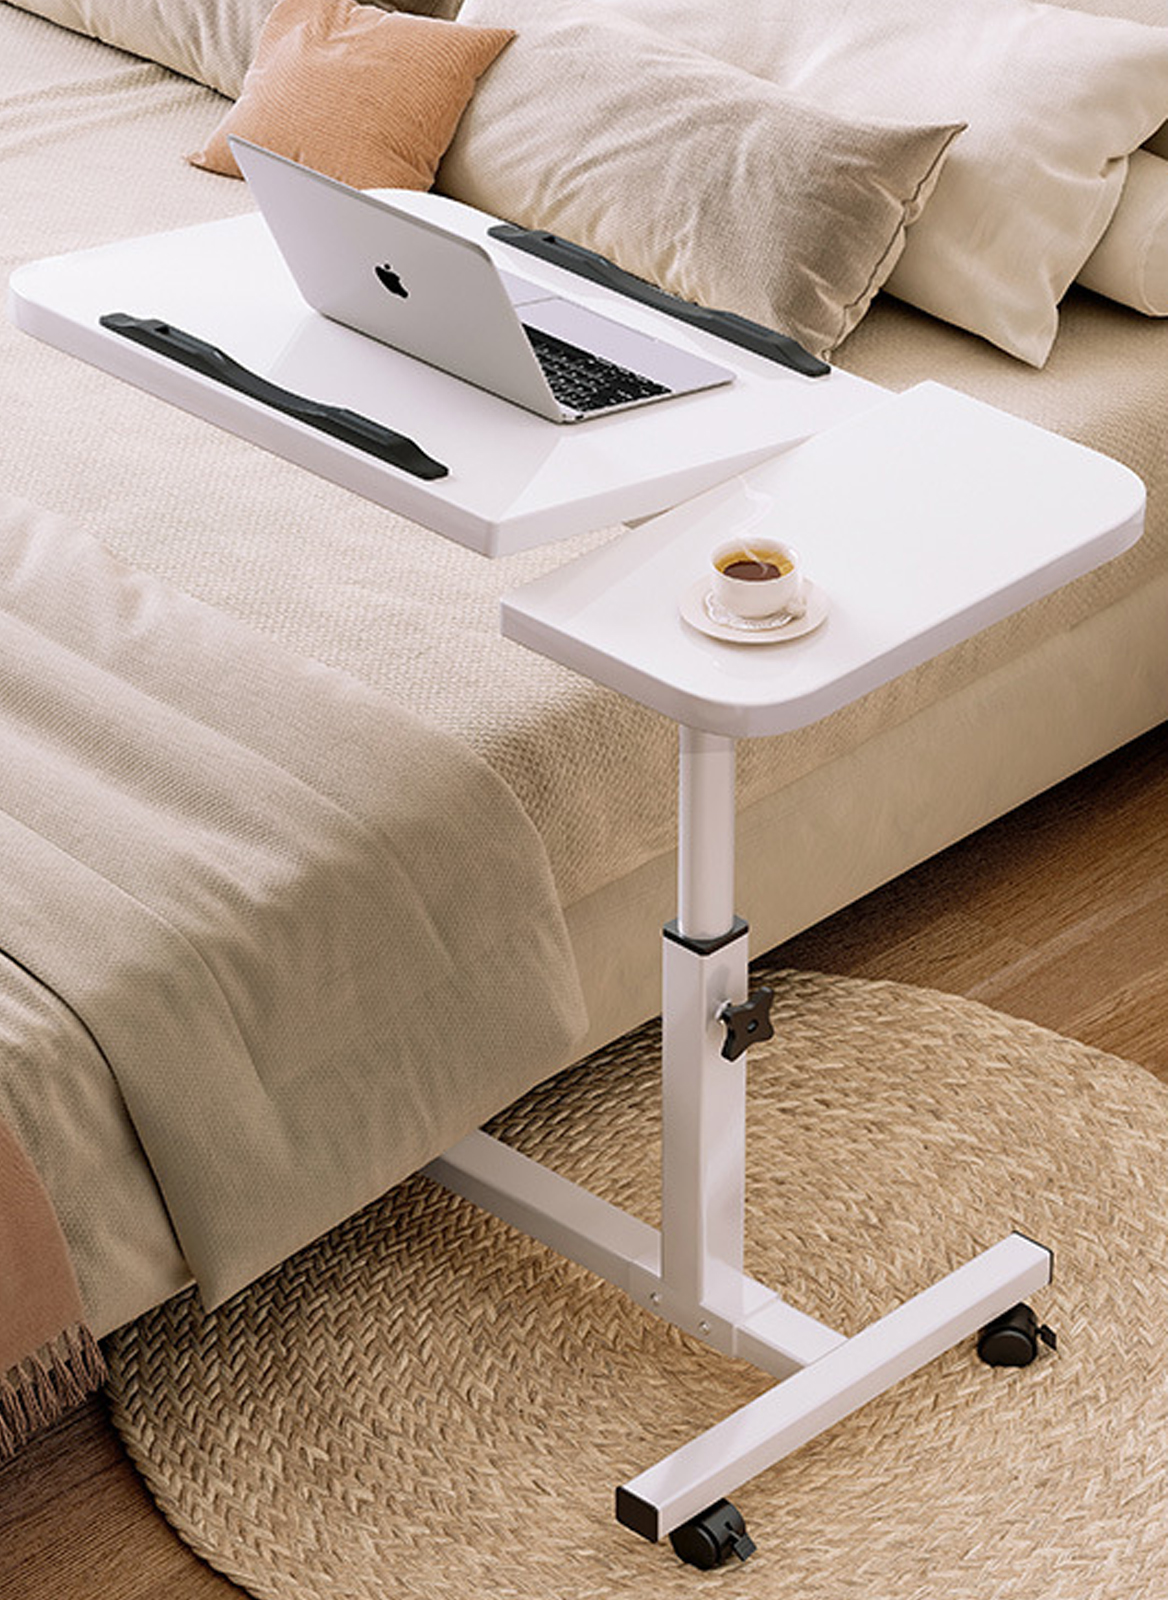 متعددة الوظائف المحمولة طاولة الكتابة على حافة السرير من غرفة نوم الأسرة ، قابلة للطي طاولة جانبية مع رفع